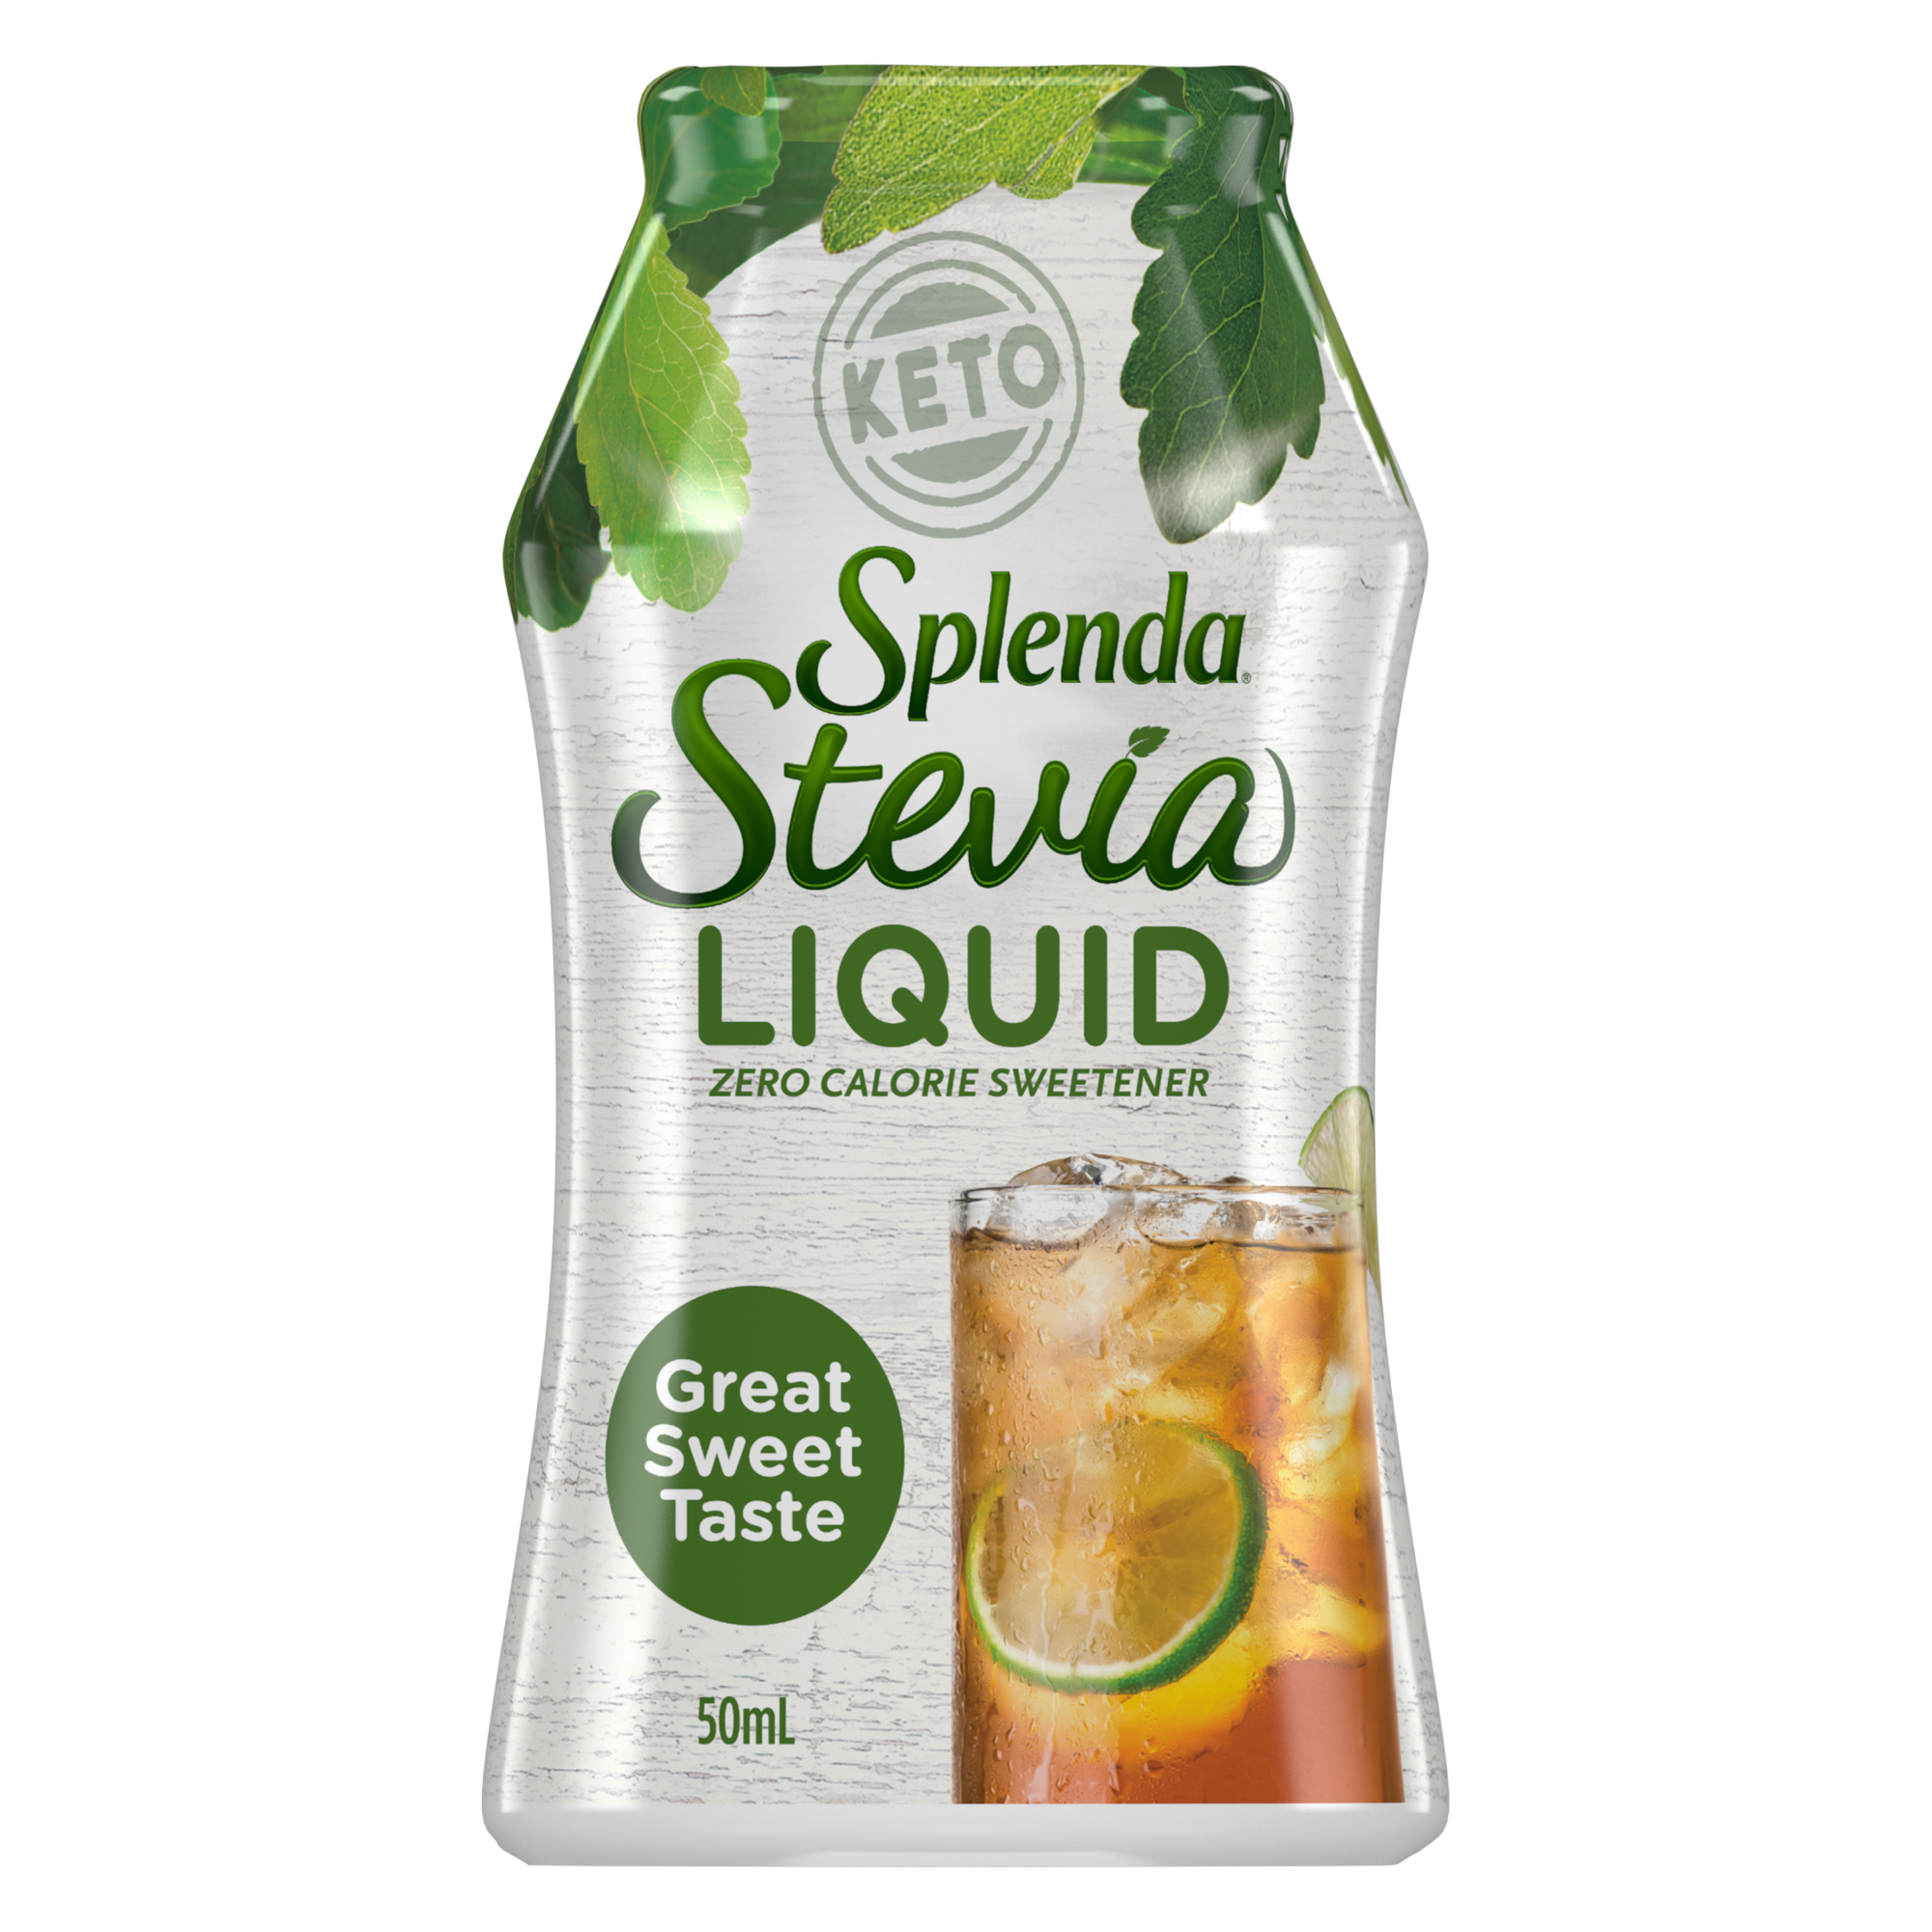 Splenda Stevia Liquid Sweetener - Front